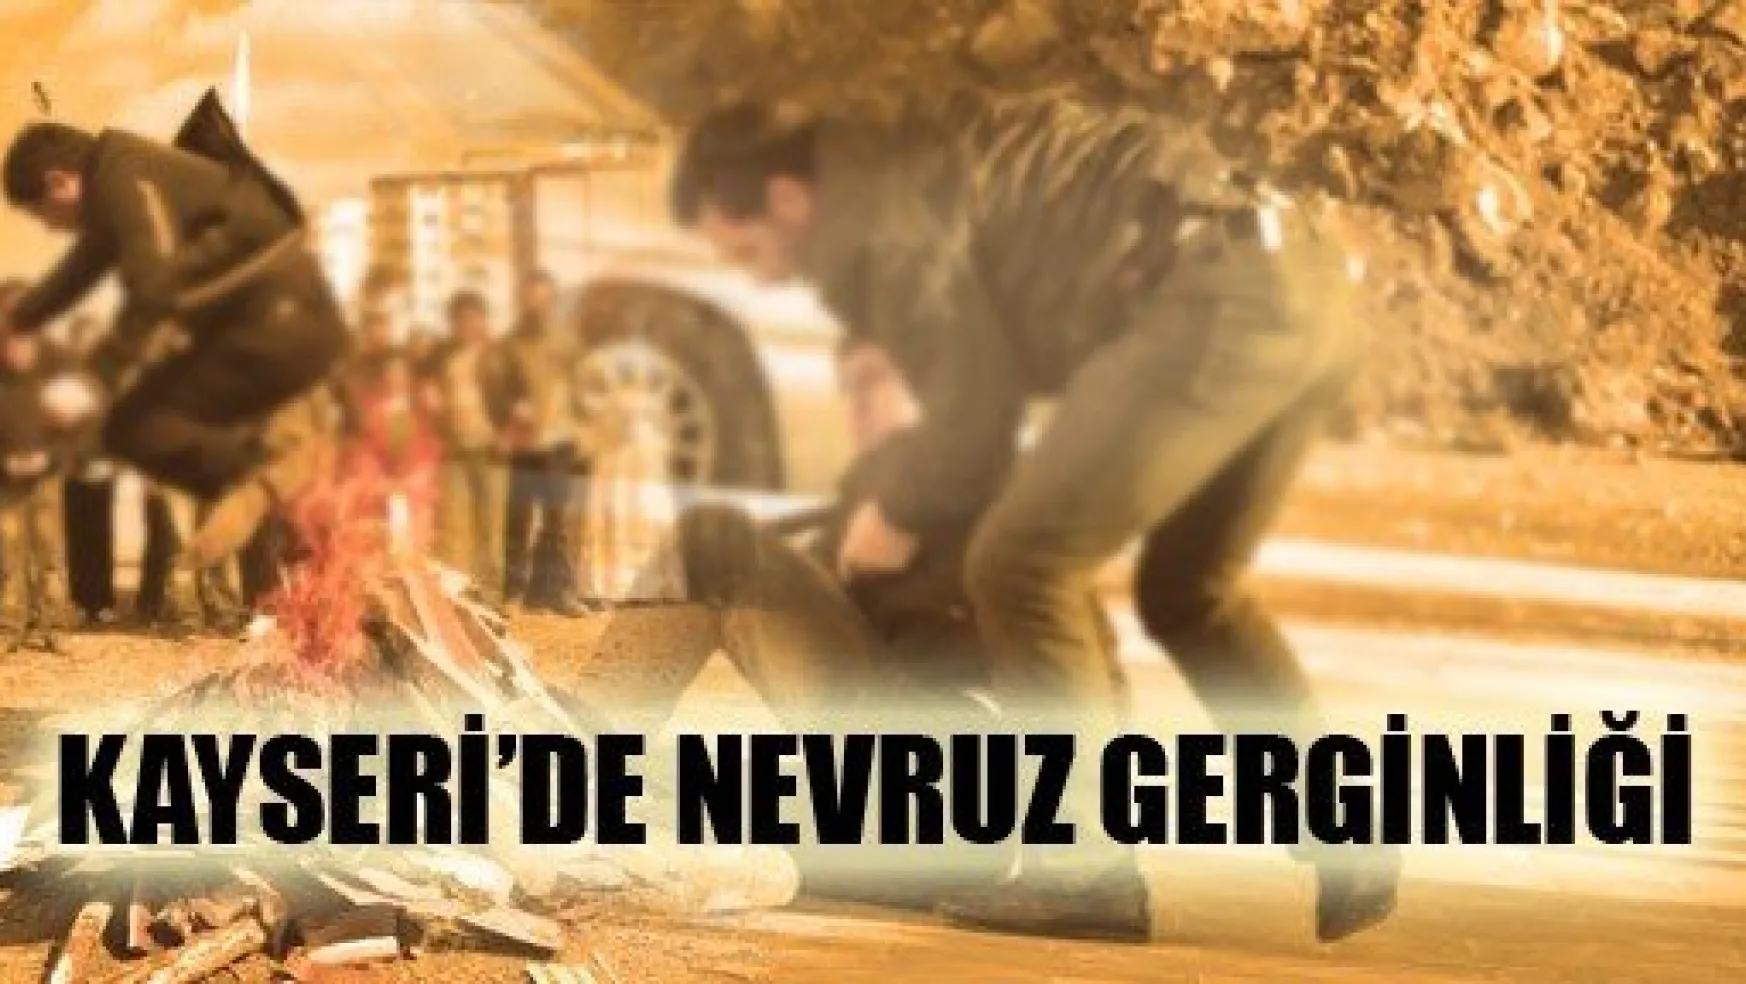 Kayseri'de Nevruz Gerginliği